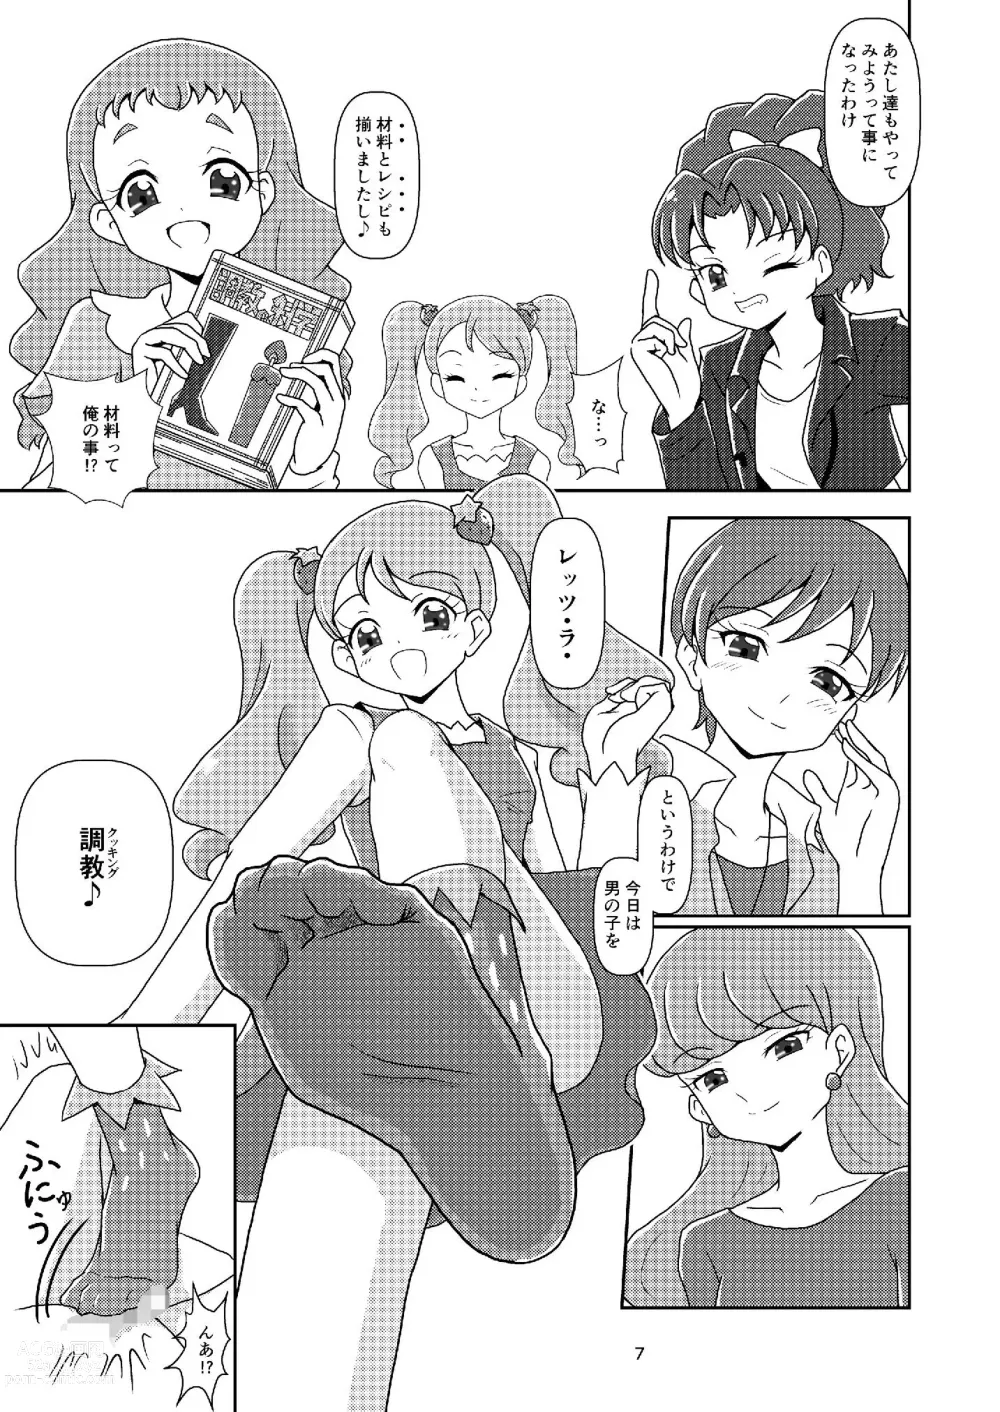 Page 7 of doujinshi Kirakira Zuricure Ashi Mode